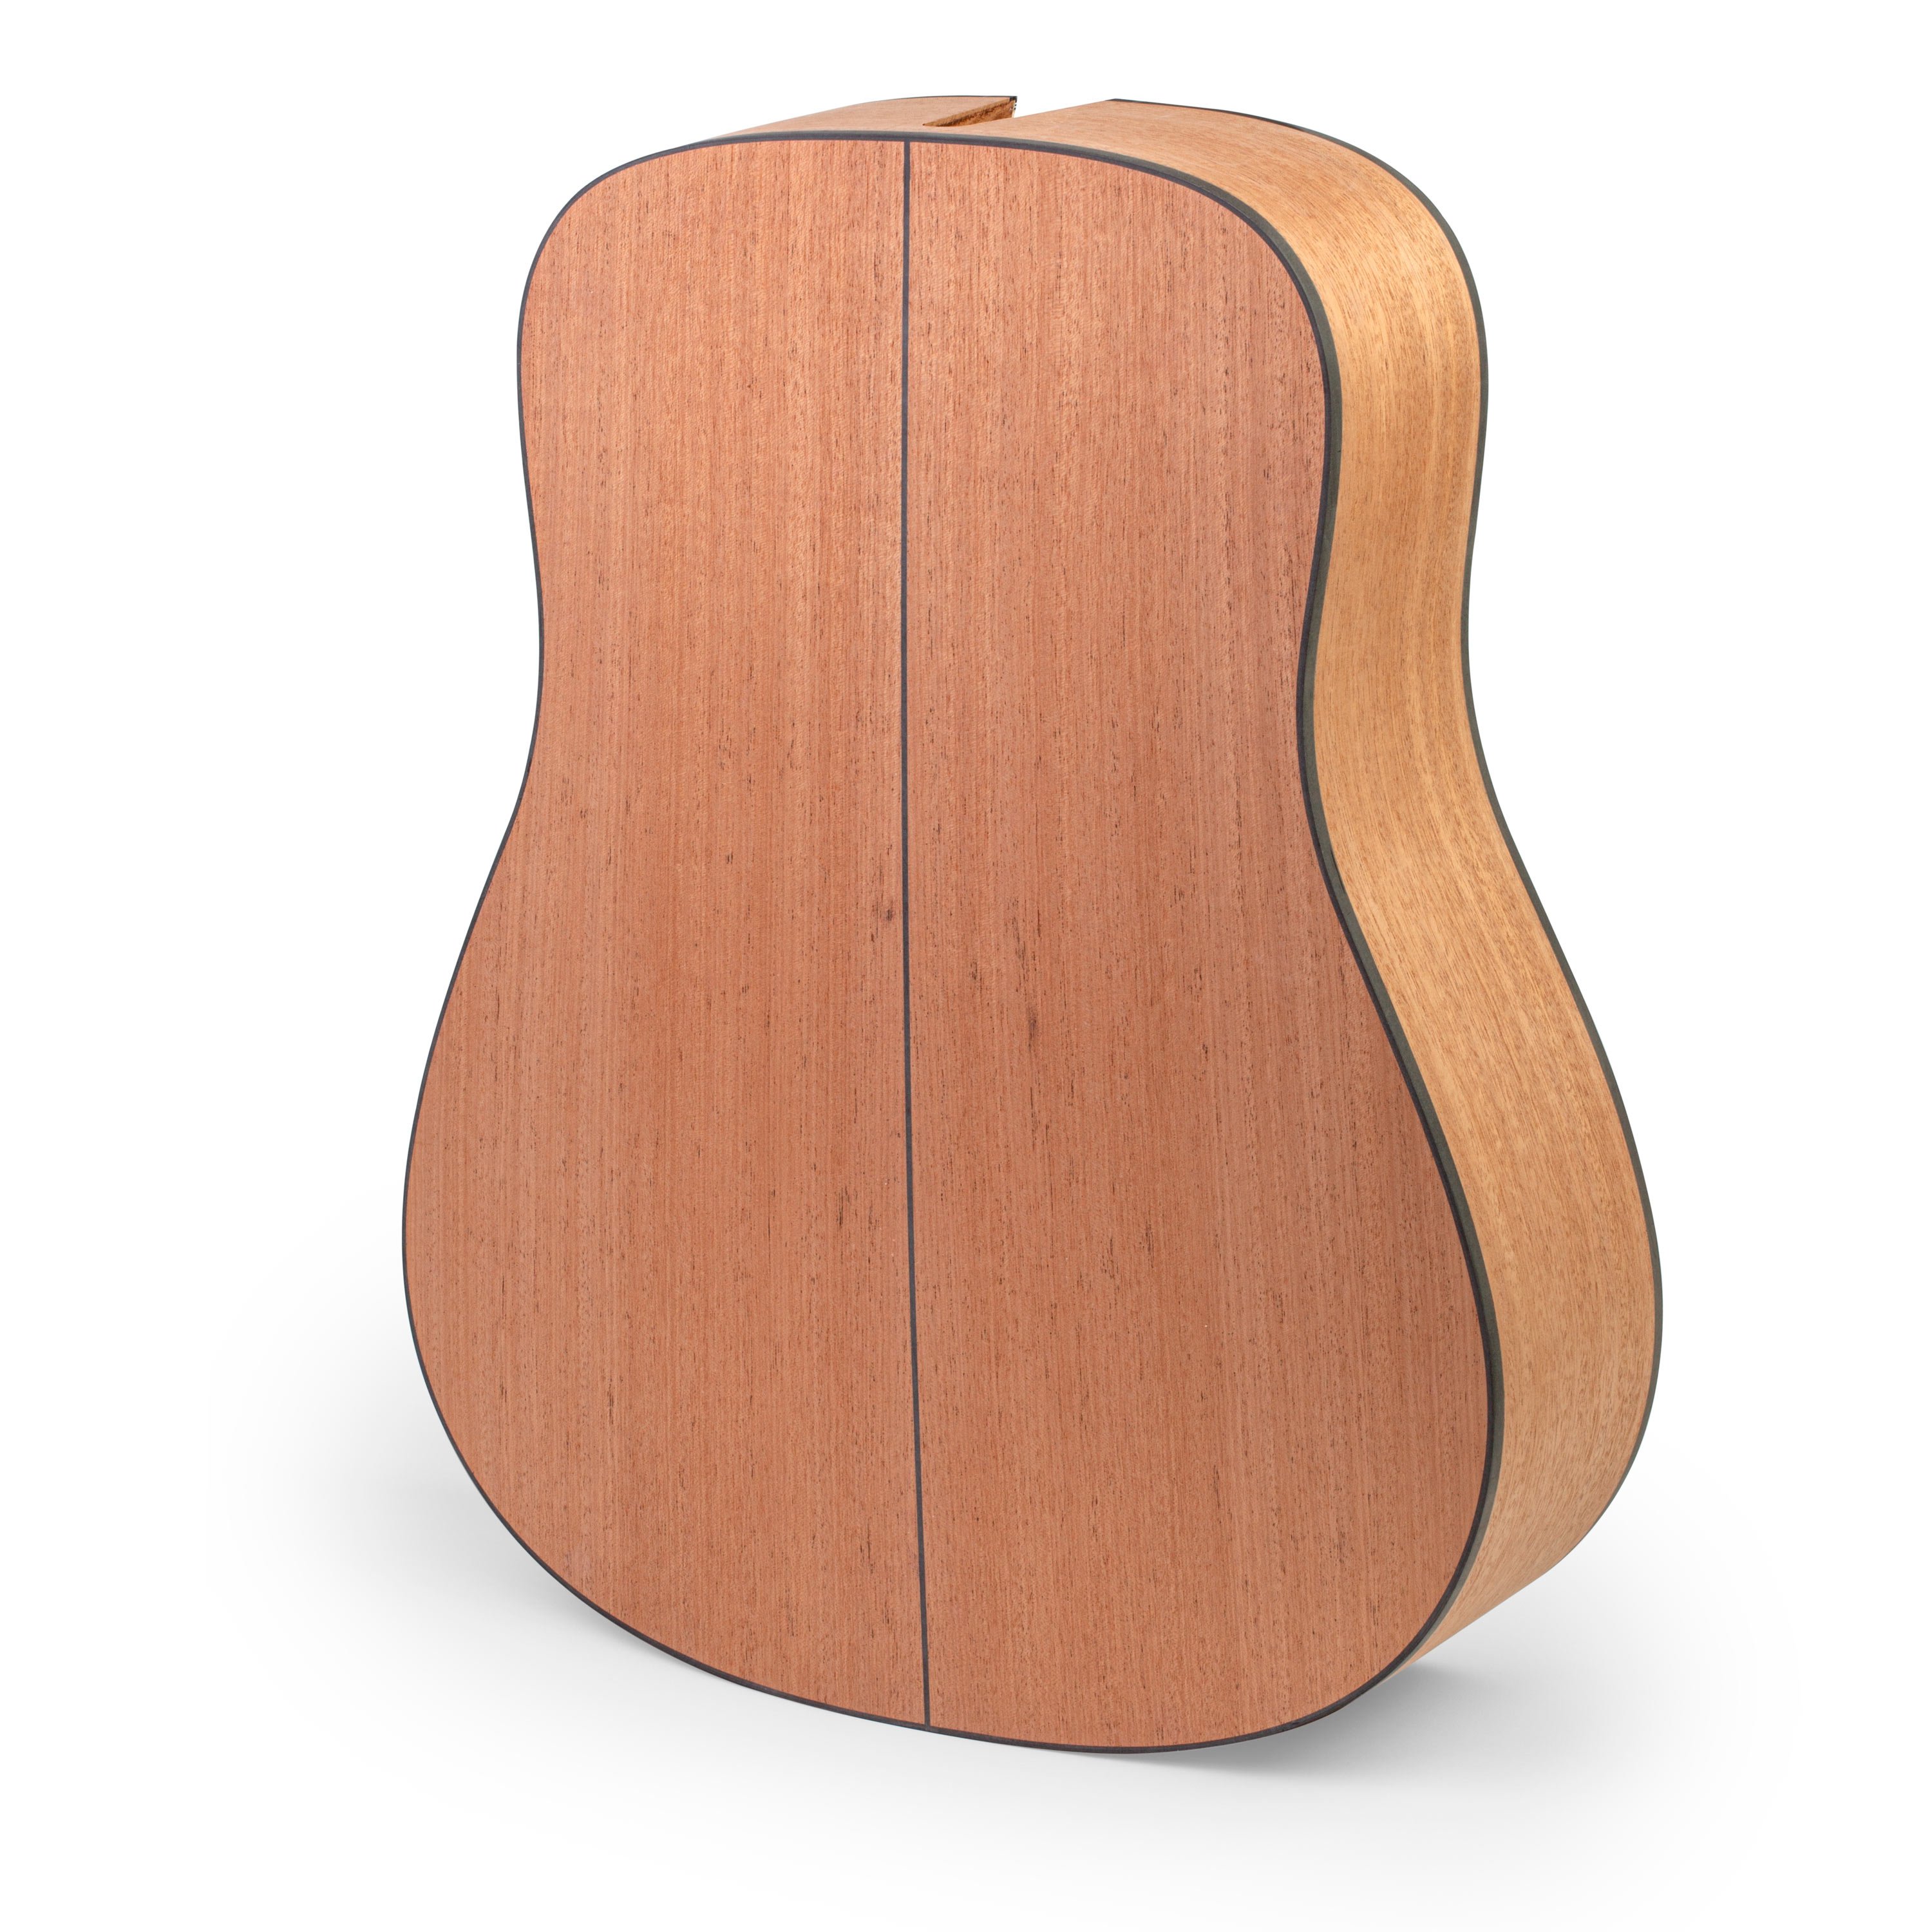 StewMac Premium Body-Built Acoustic Guitar Kit